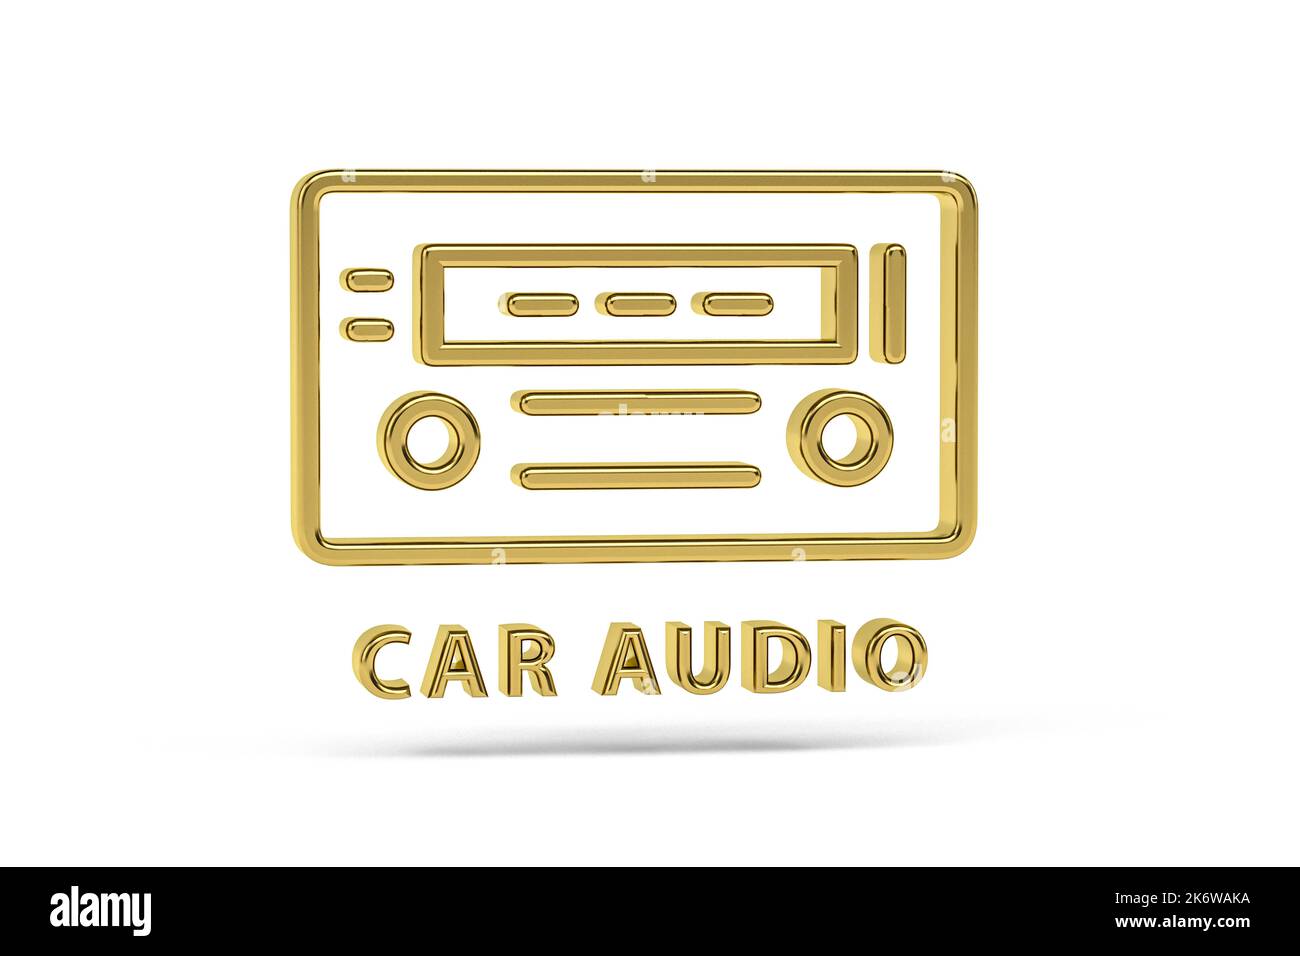 Radio de coche viejo, con cd y música mp3 aislados sobre fondo blanco  Fotografía de stock - Alamy